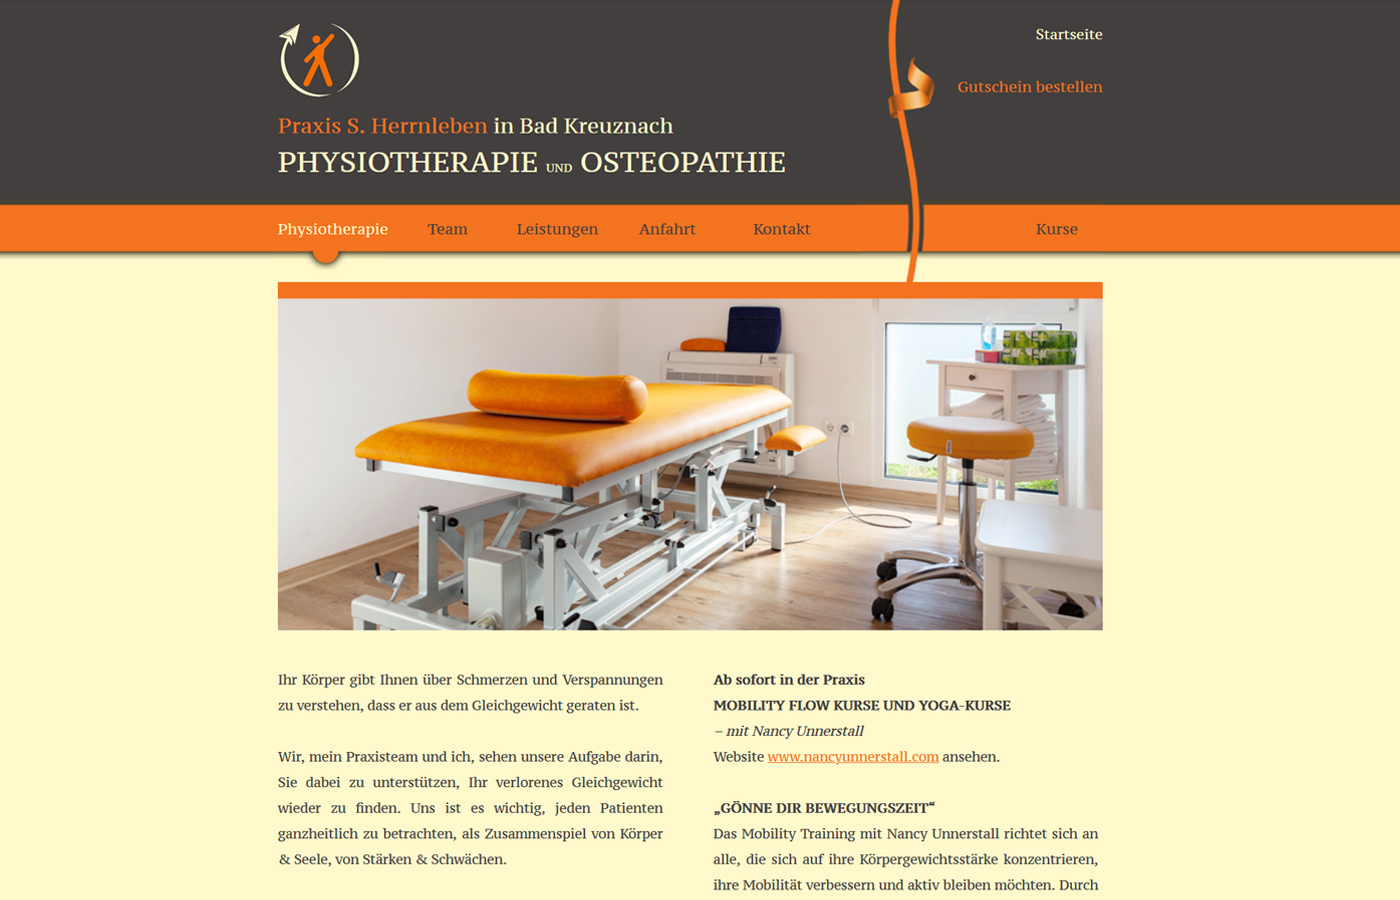 Praxis S. Herrnleben für Physiotherapie